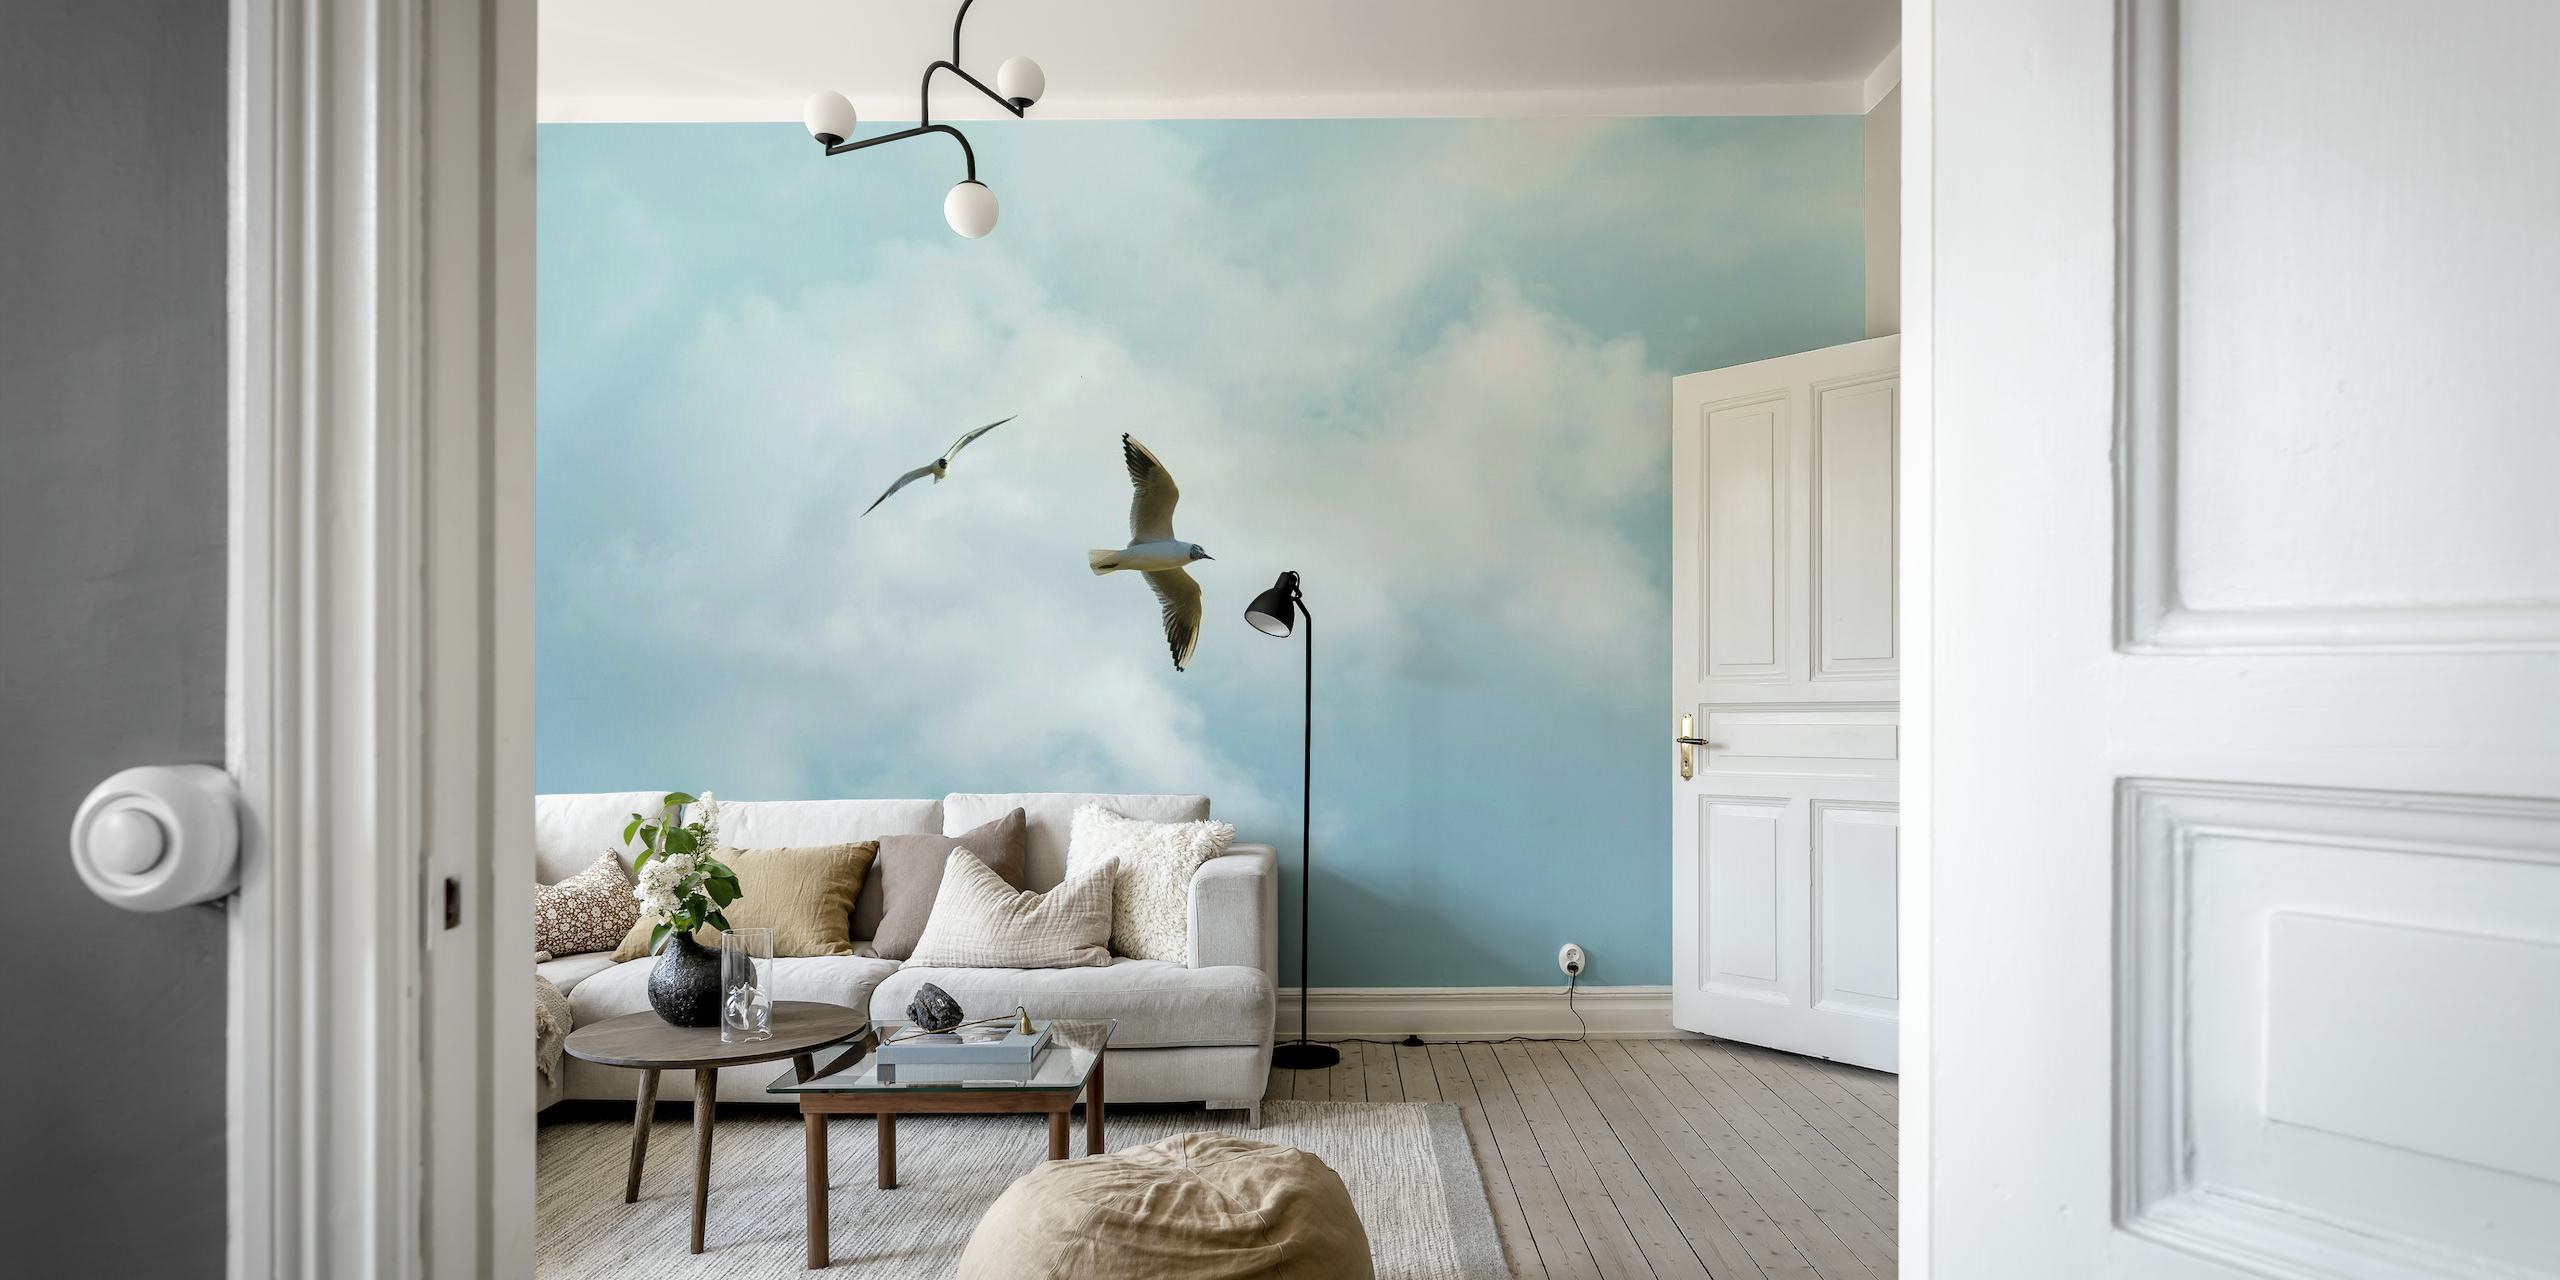 Murale di due uccelli marini che volano in un cielo pacifico con soffici nuvole